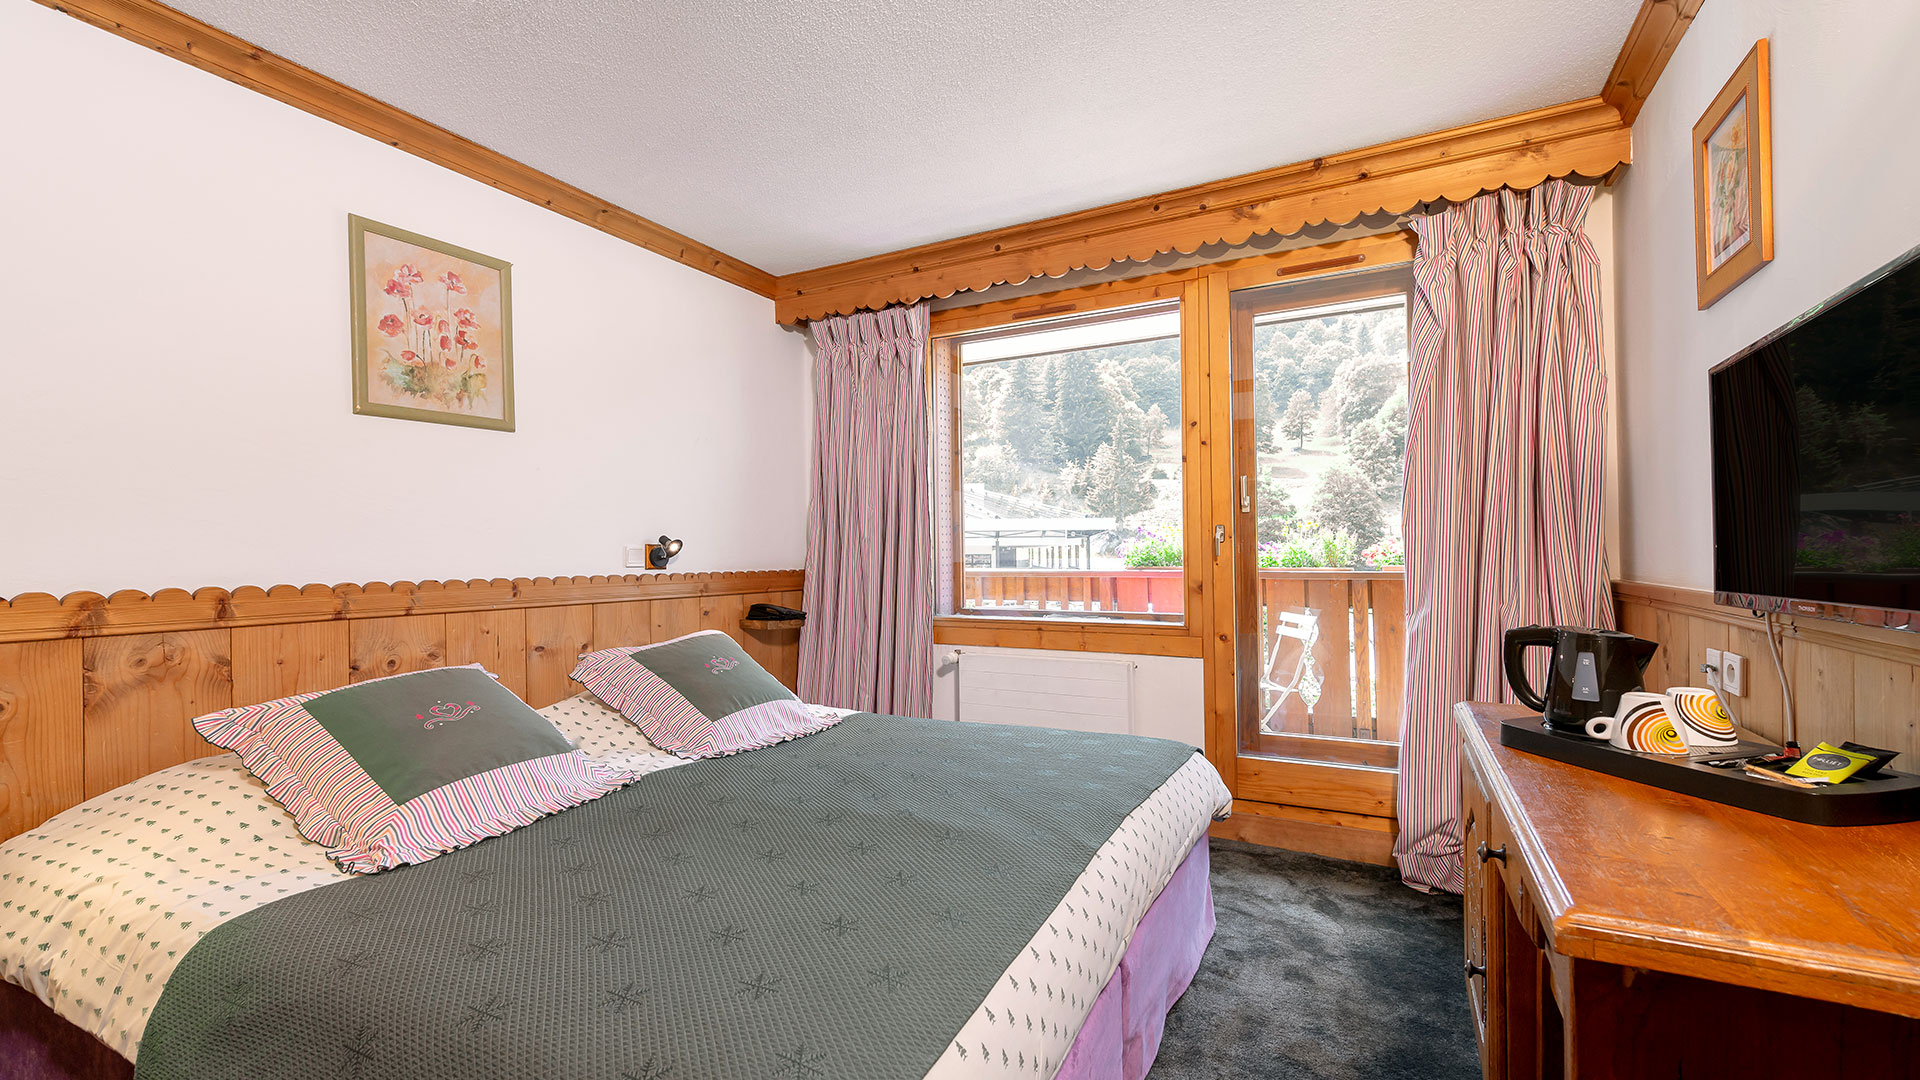 Chambre avec vue hôtel spa auvergne rhone alpes